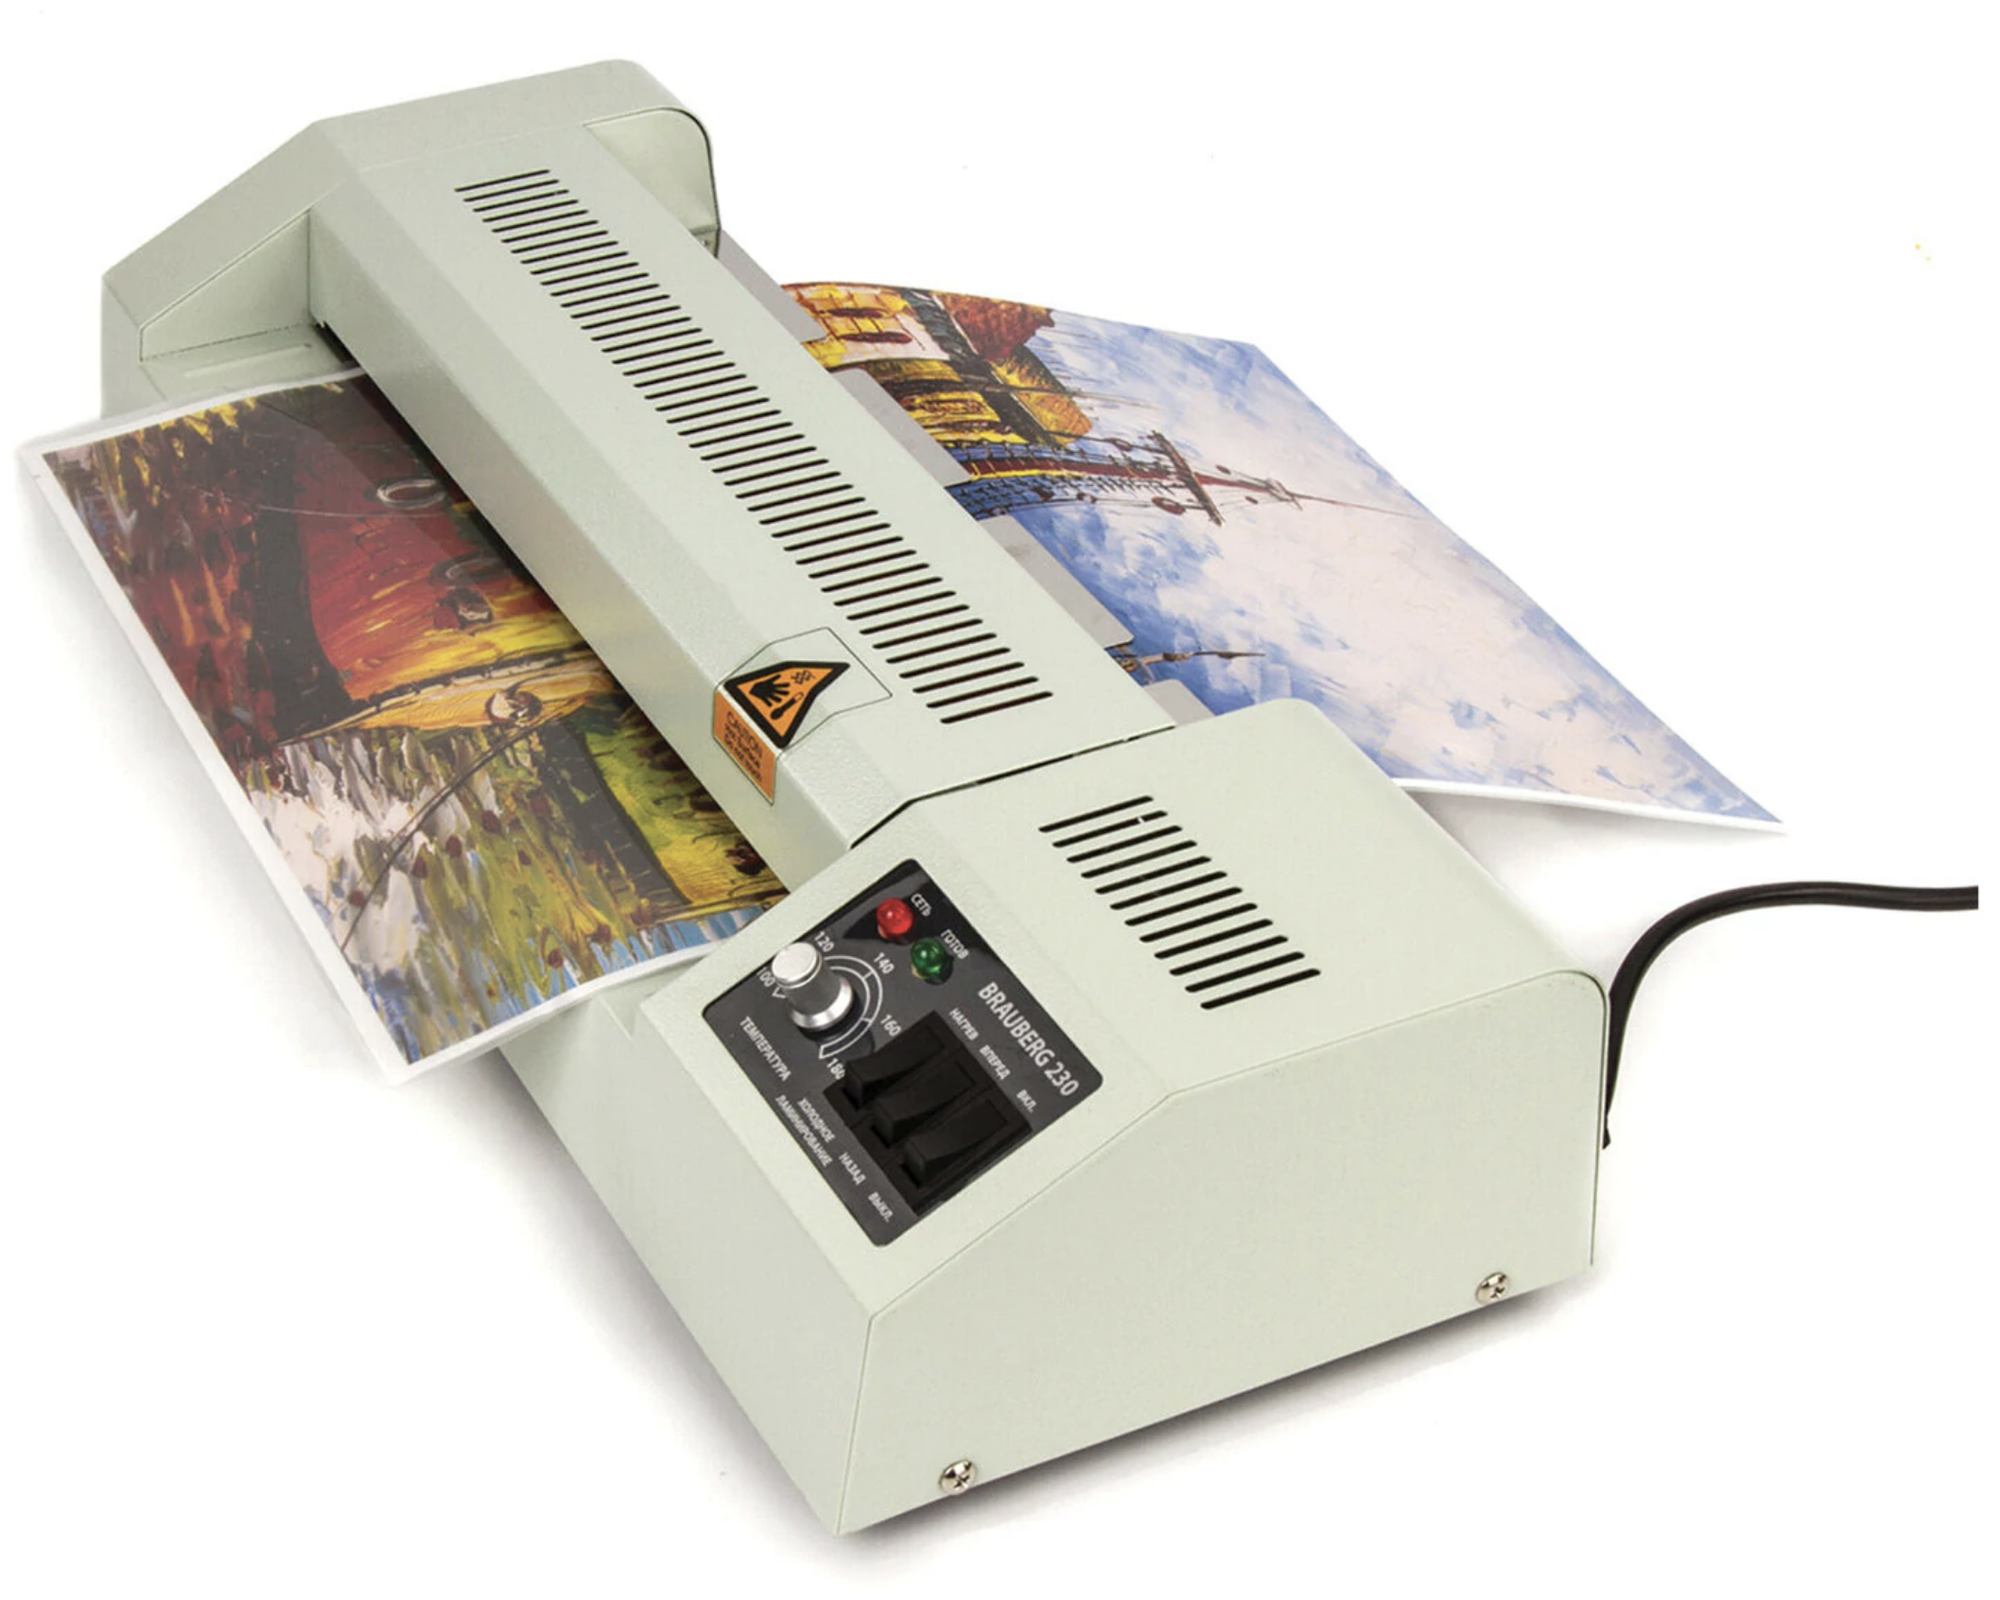 Ламинатор бумаги пакетный FGK-320 для дома и офиса формат А3 скорость 51/мин для горячего и холодного ламинирования Brauberg 531351